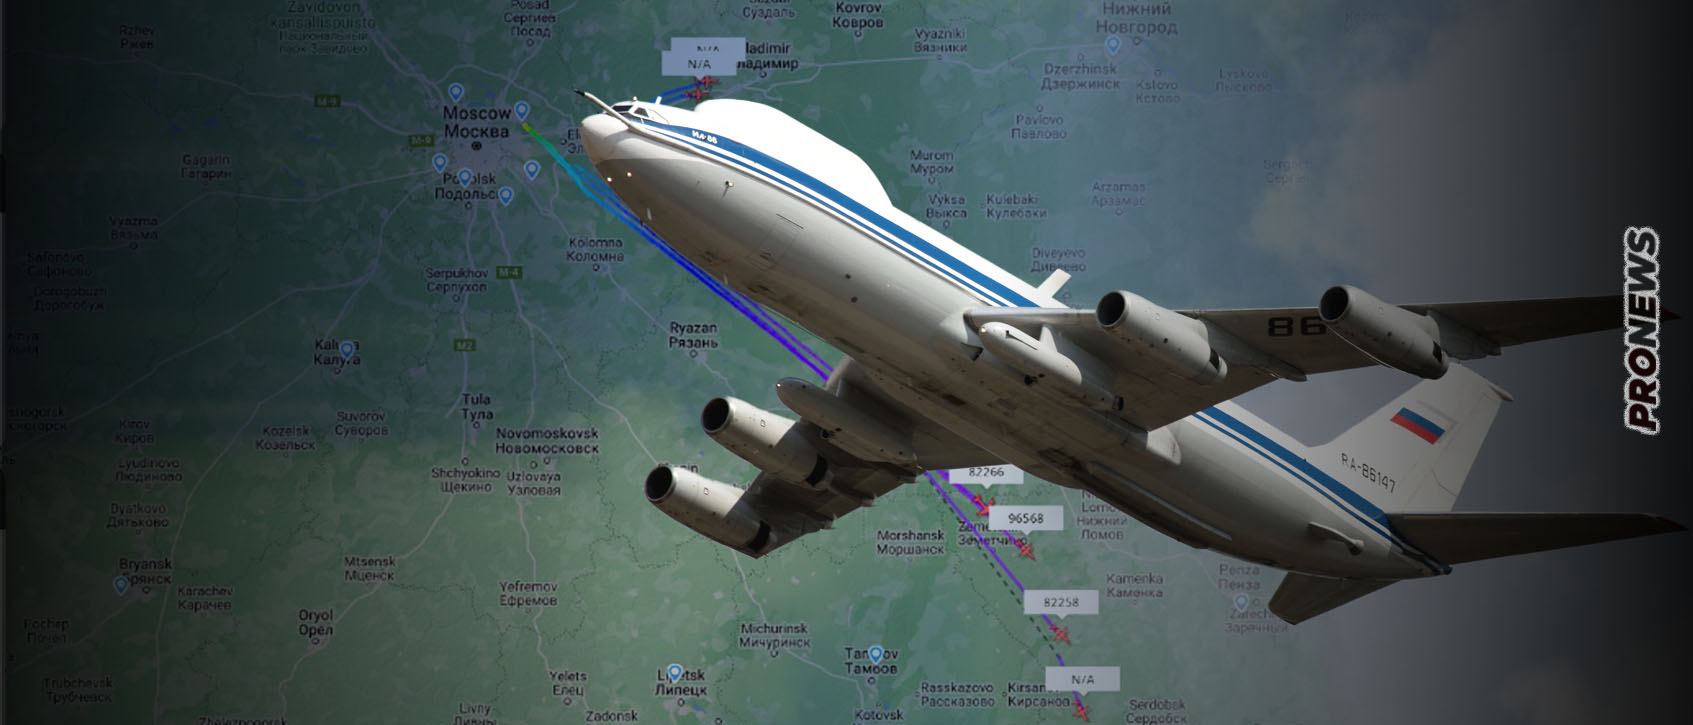 Διασπορά των αεροσκαφών συλλογής πληροφοριών της ρωσικής Αεροπορίας από τα αεροδρόμια της Μόσχας